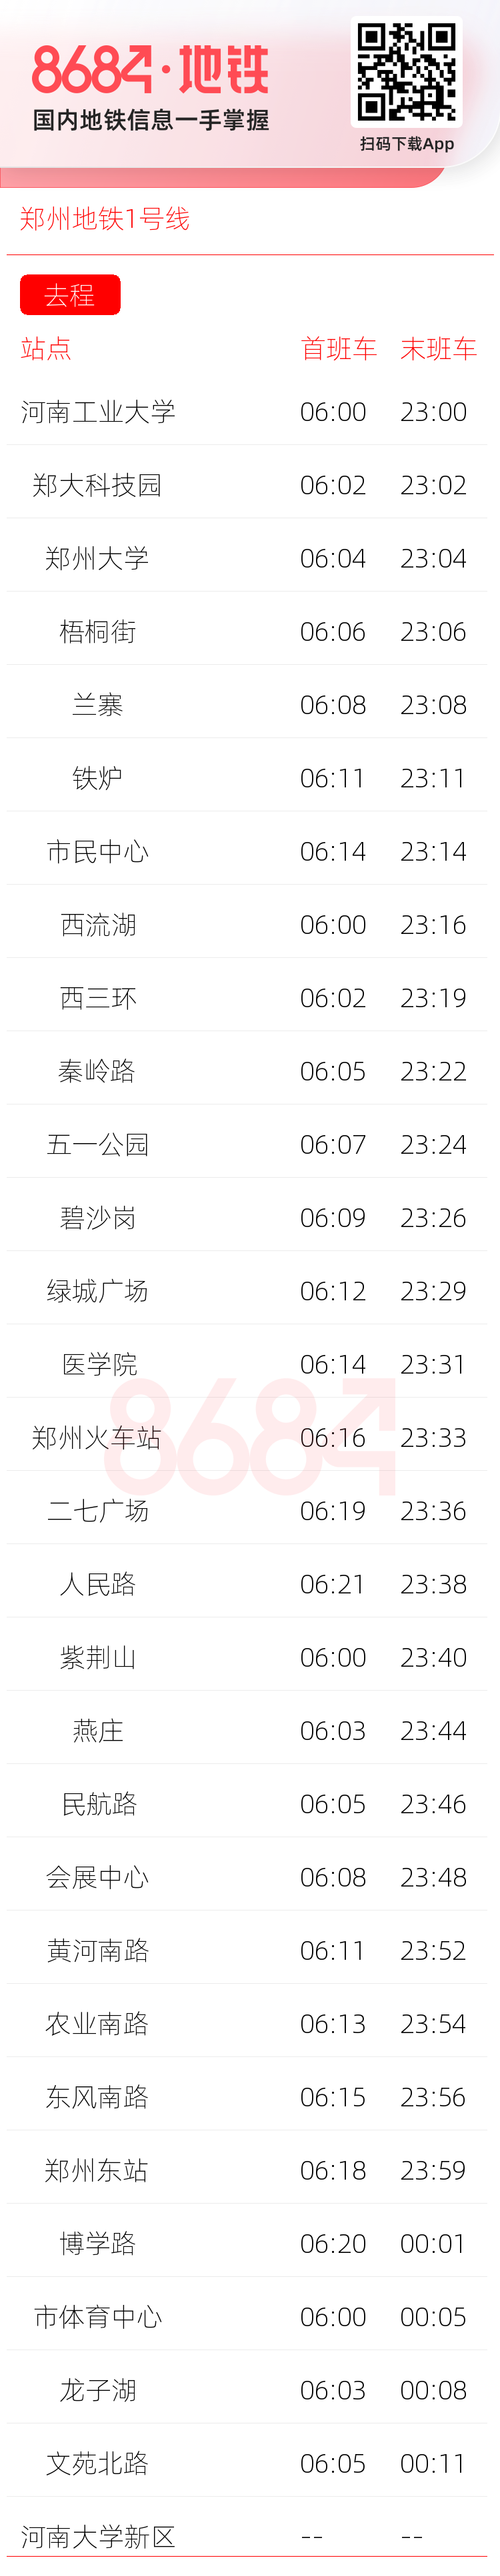 郑州地铁1号线运营时间表